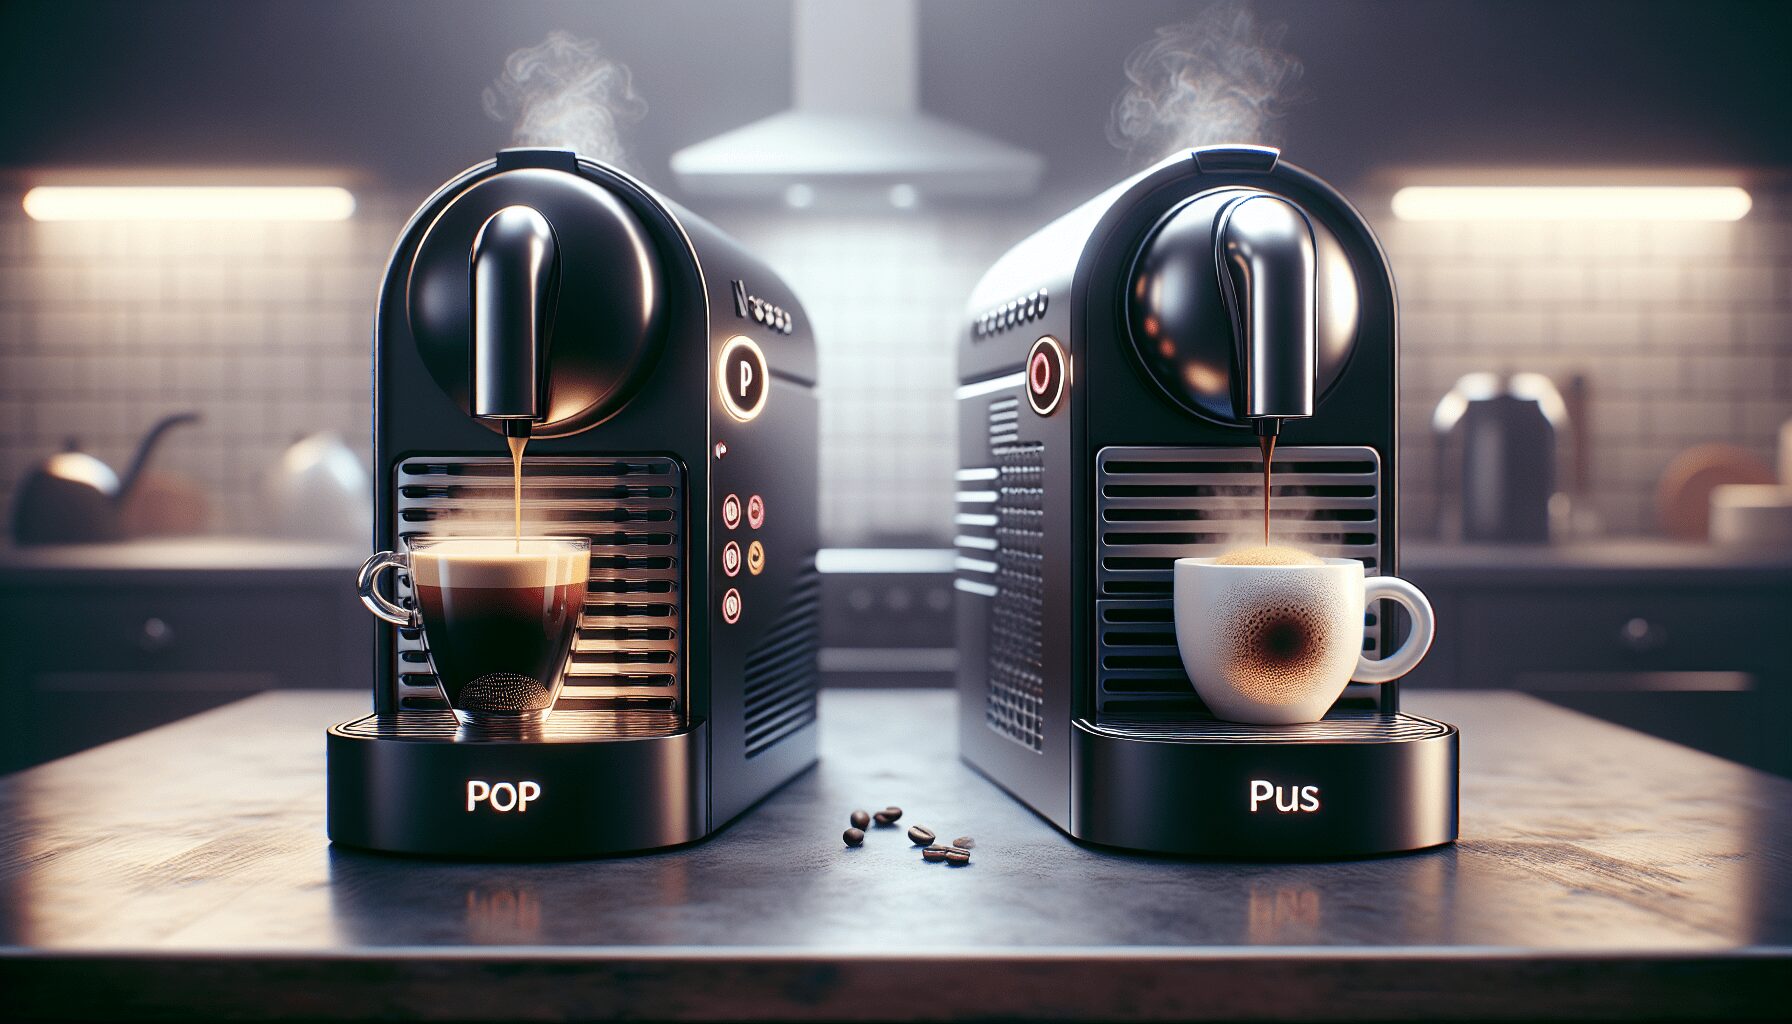 A Comparison of Nespresso Pop and Plus